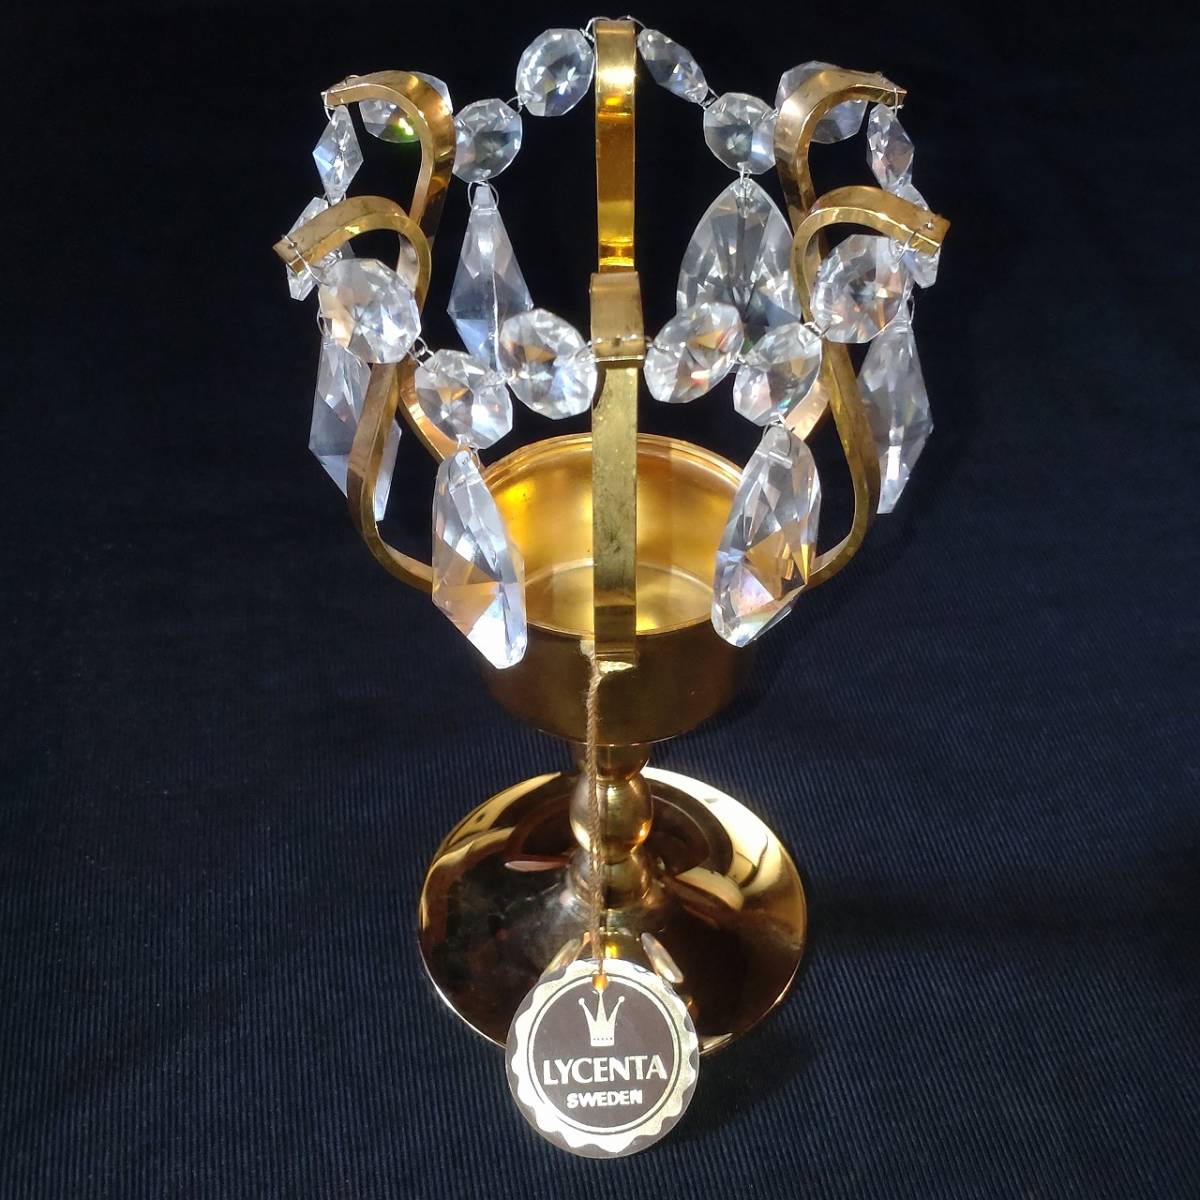 キャンドルホルダー LYCENTA SWEDEN SWEDISH HANDWORK stass crystal gold plating 24 carat 高さ約16㎝ 直径約9.8cm 【3956】